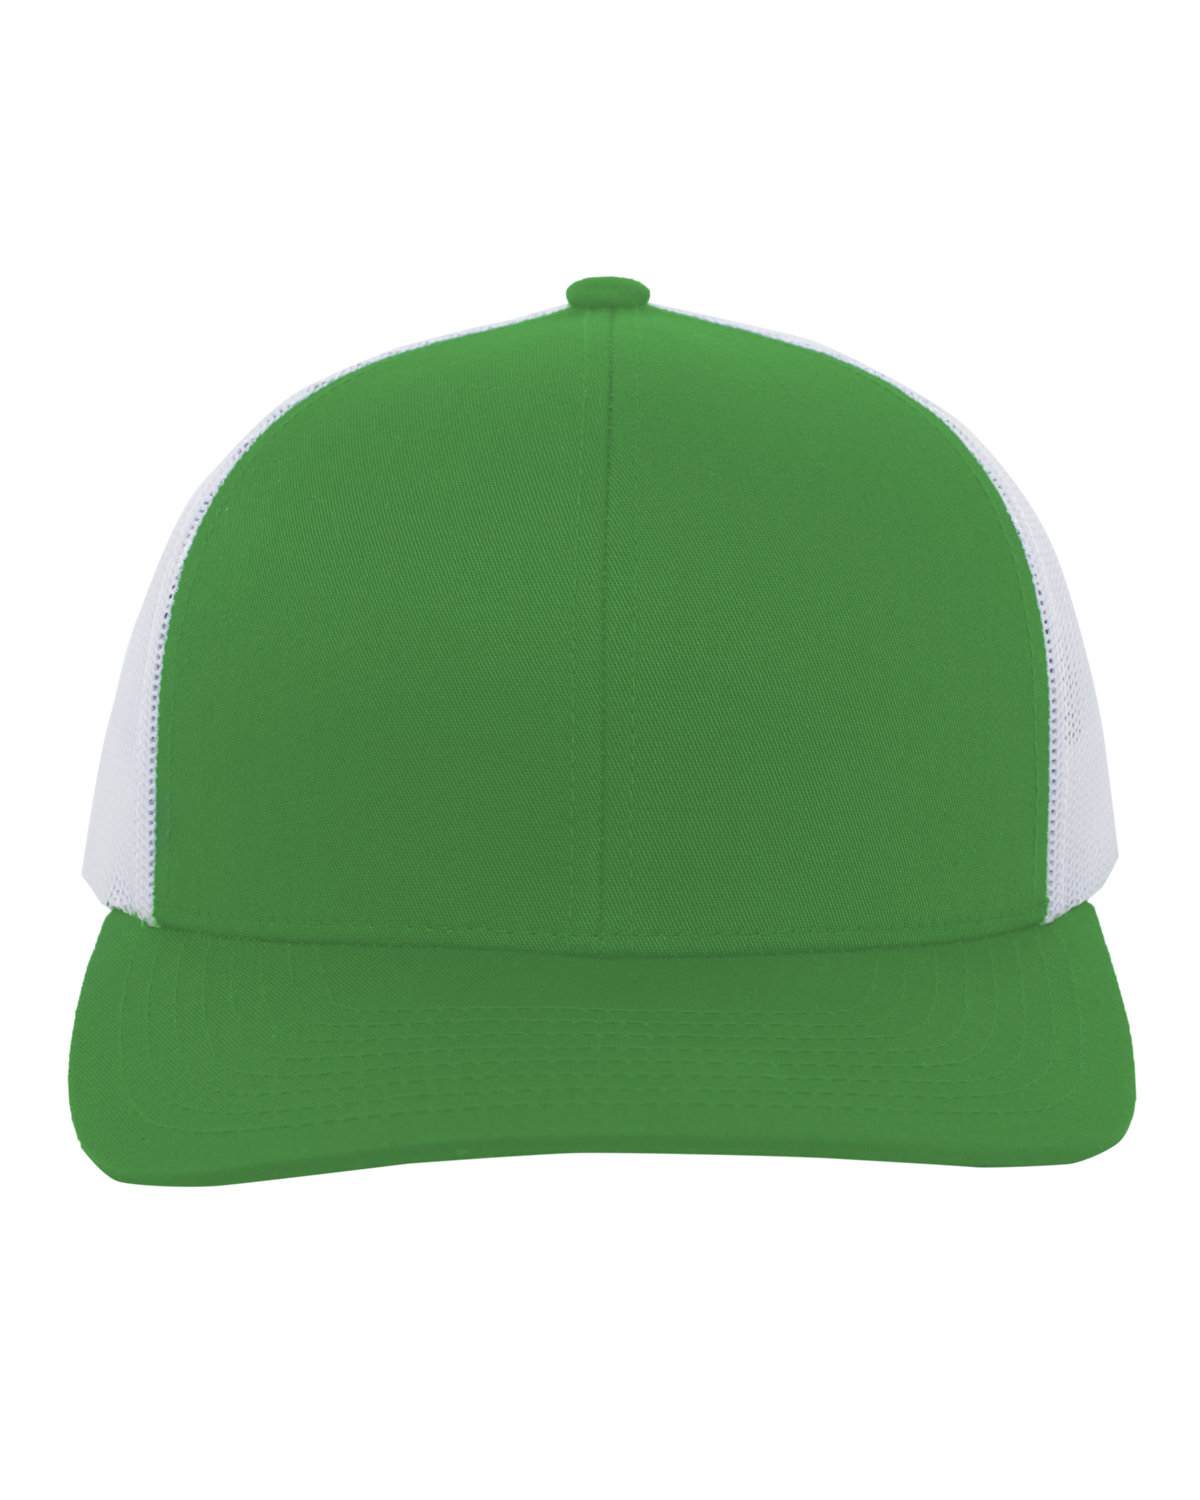 Pacific Headwear Trucker Snapback Hat KELLY/ WHITE 